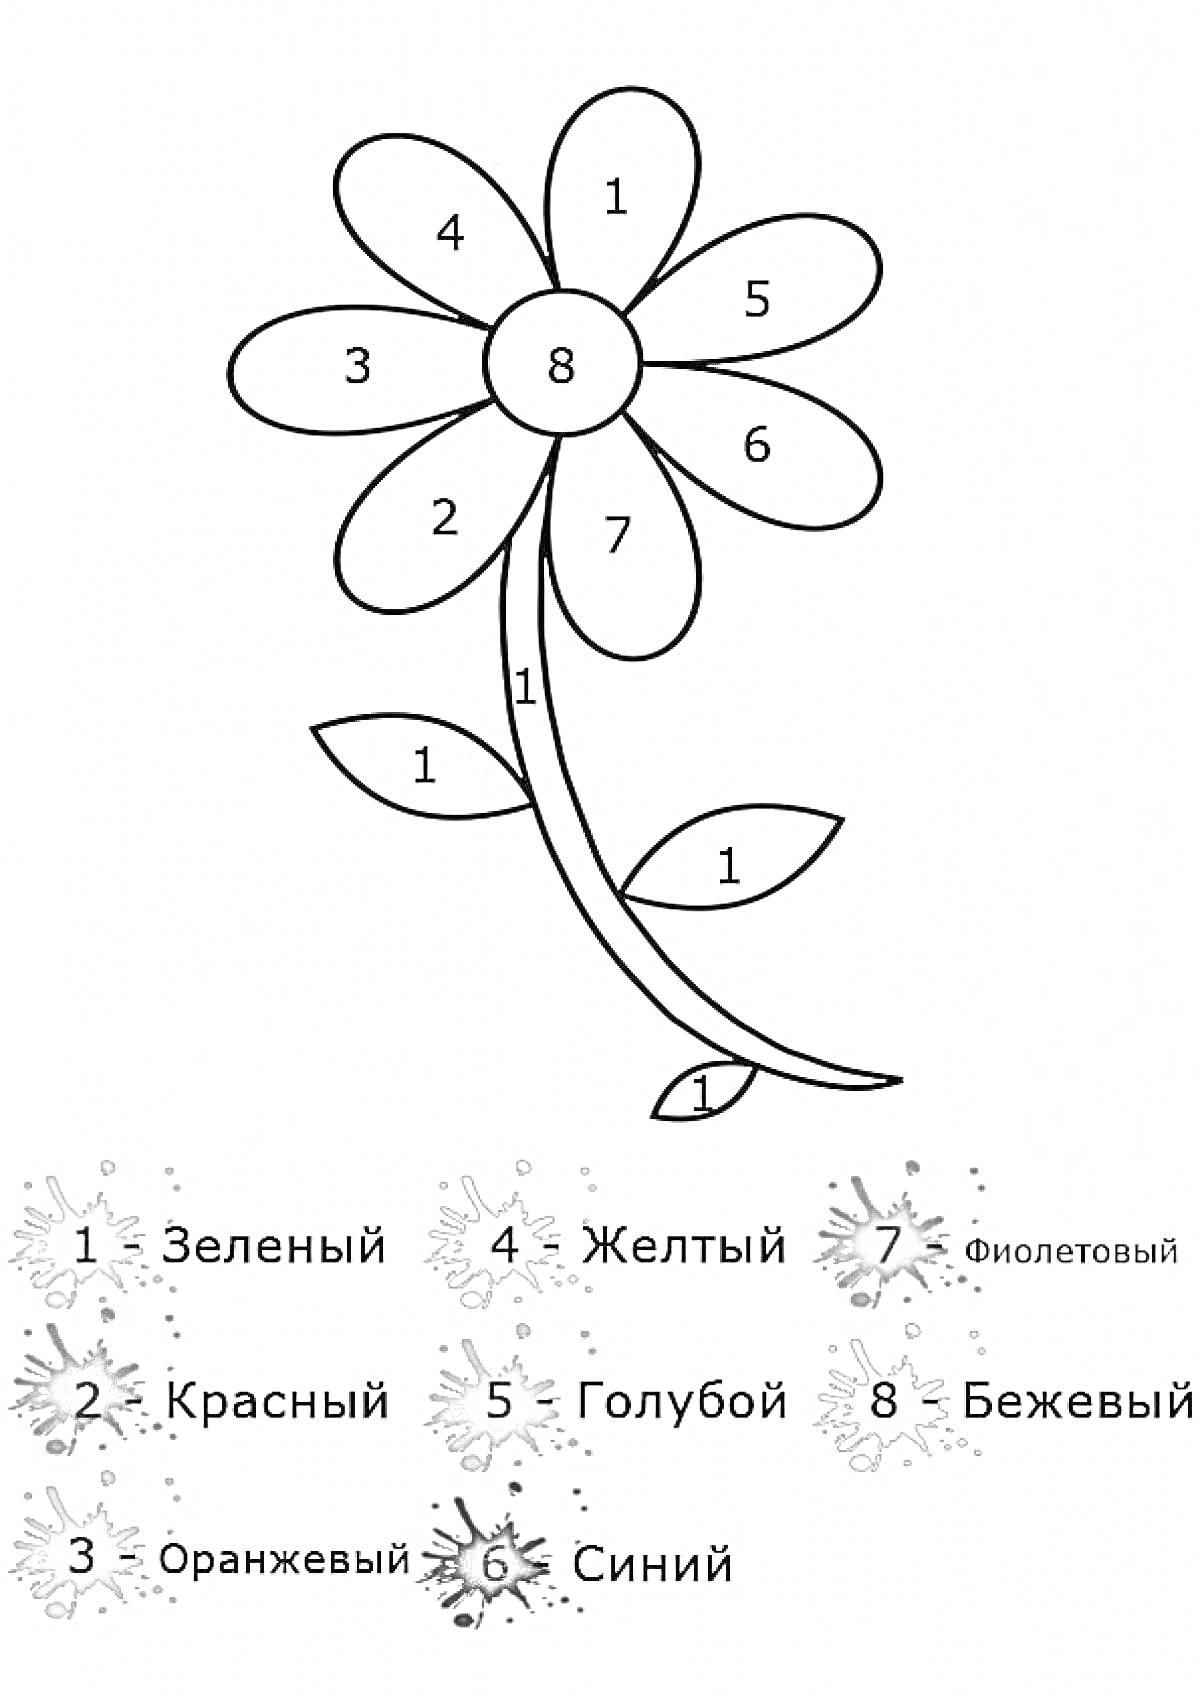 Цветок с семью разноцветными лепестками и зелеными листьями